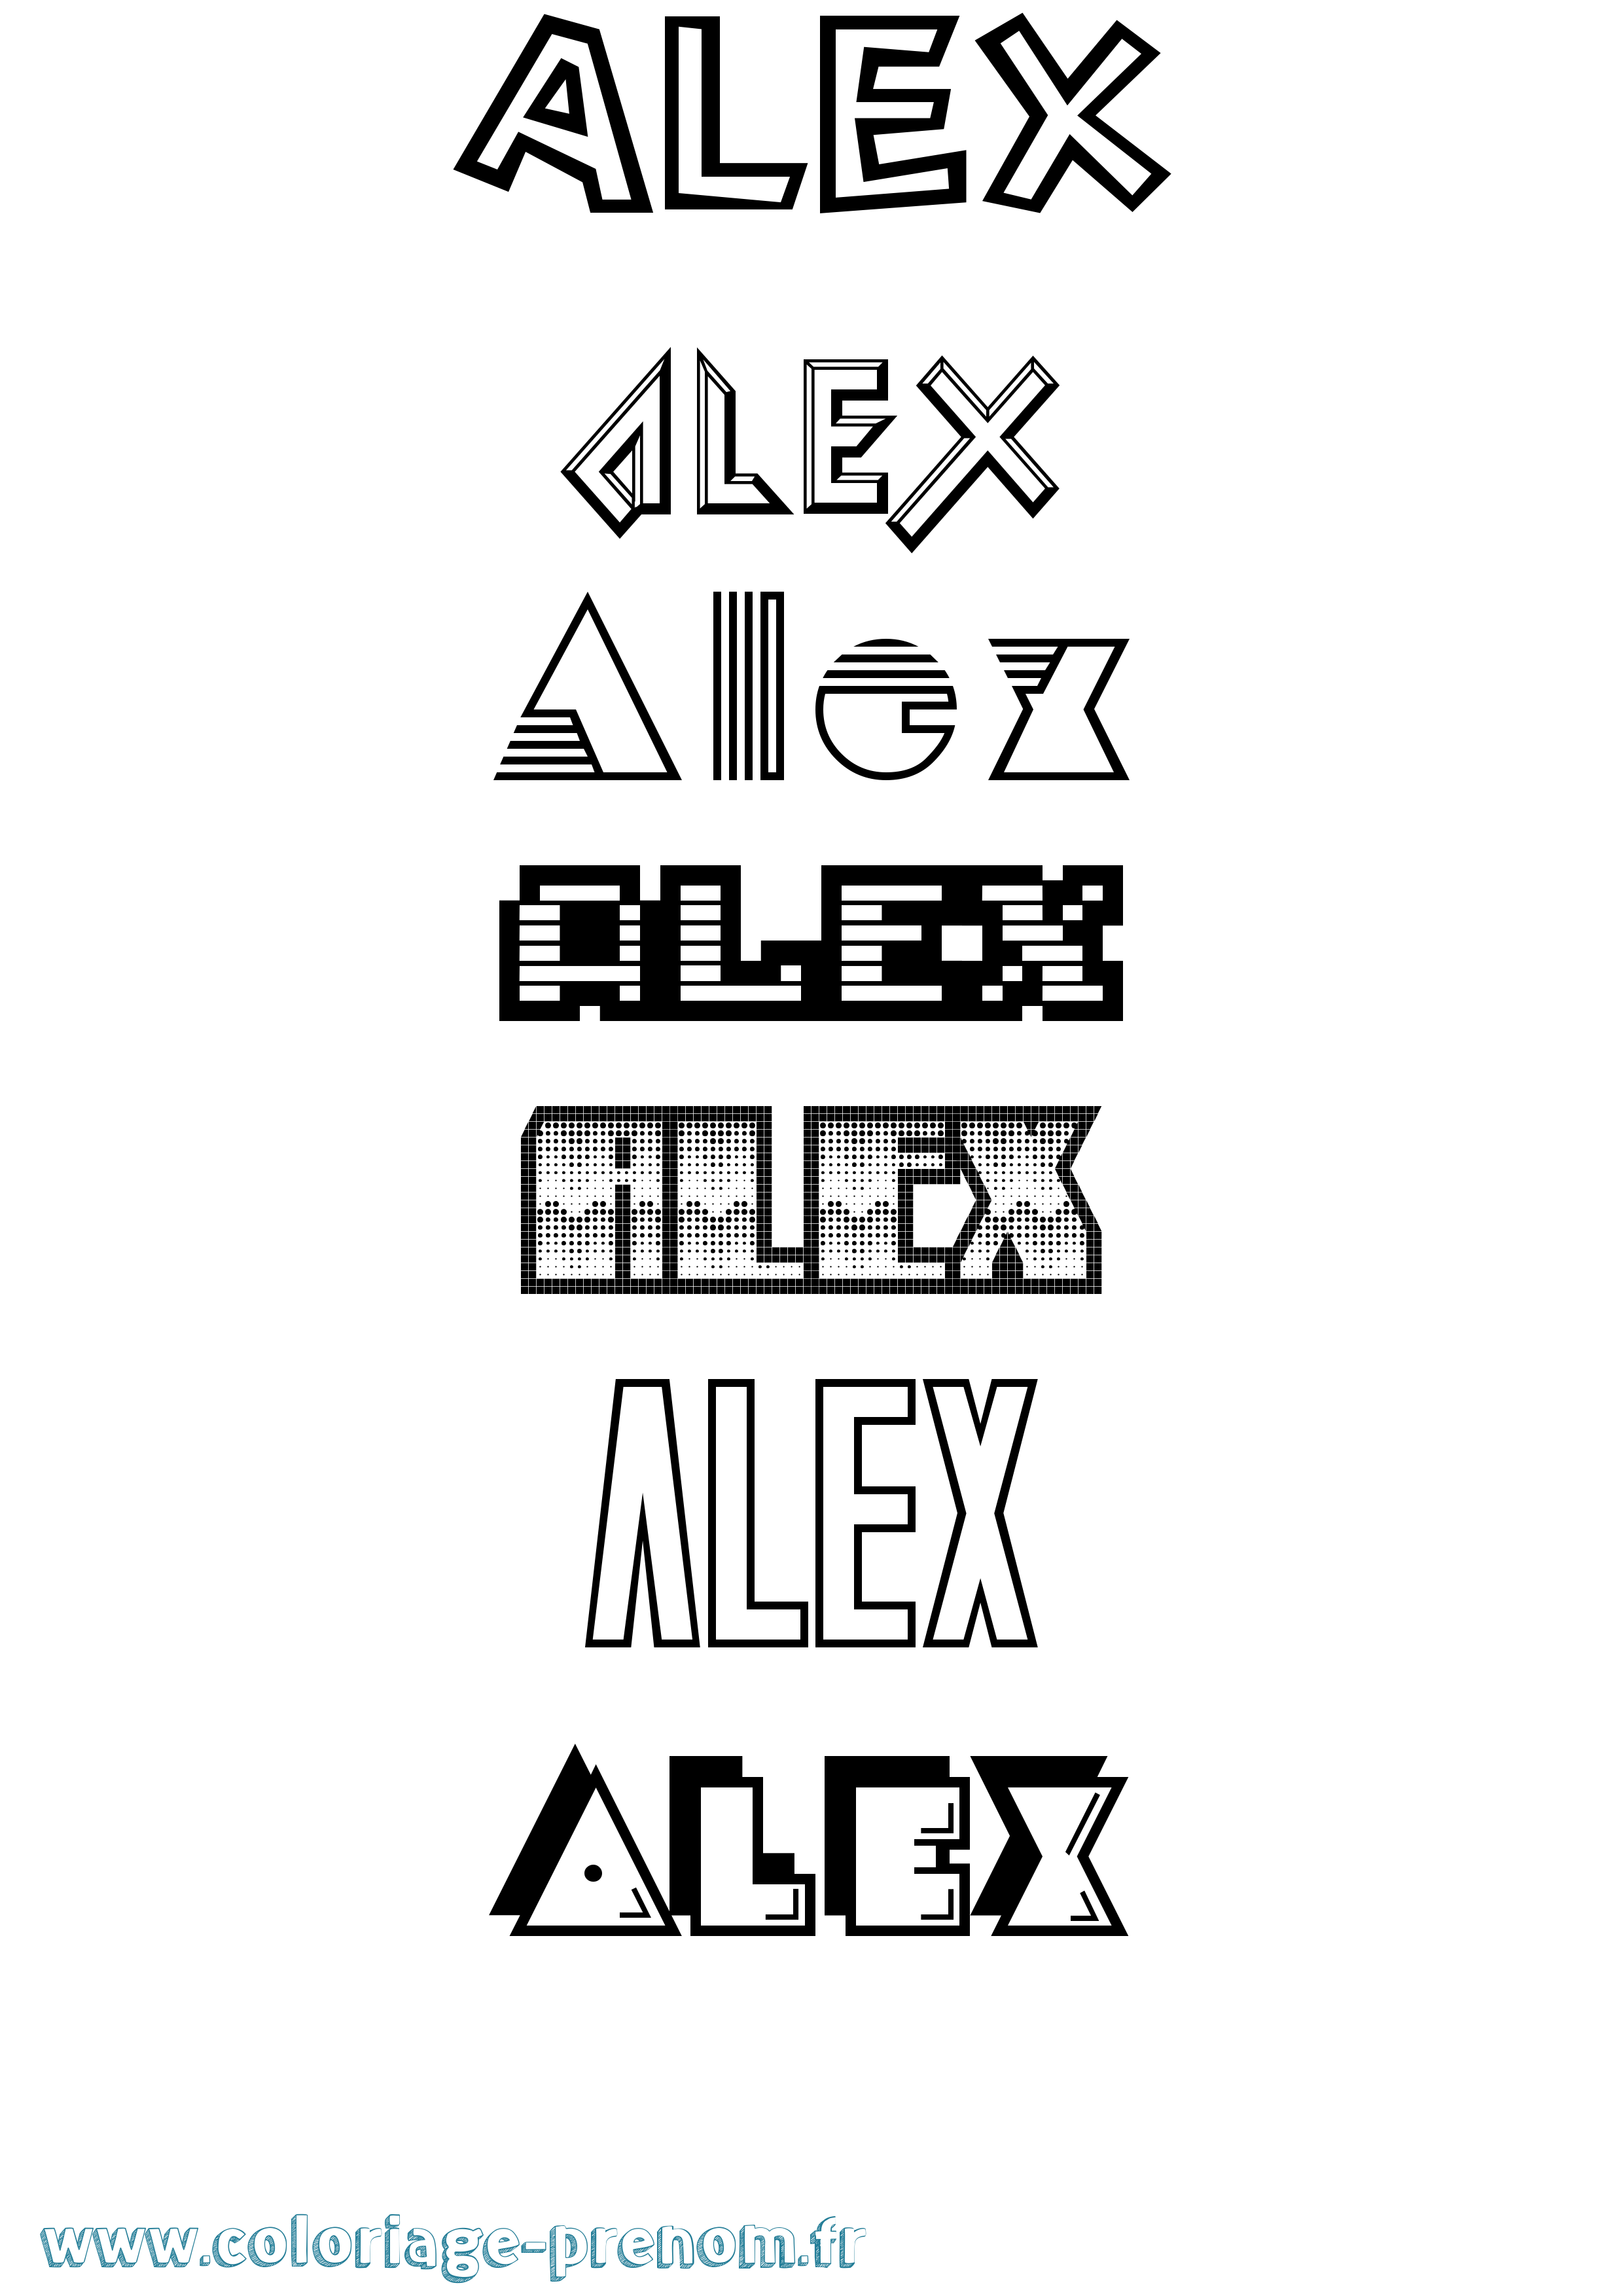 Coloriage prénom Alex Jeux Vidéos